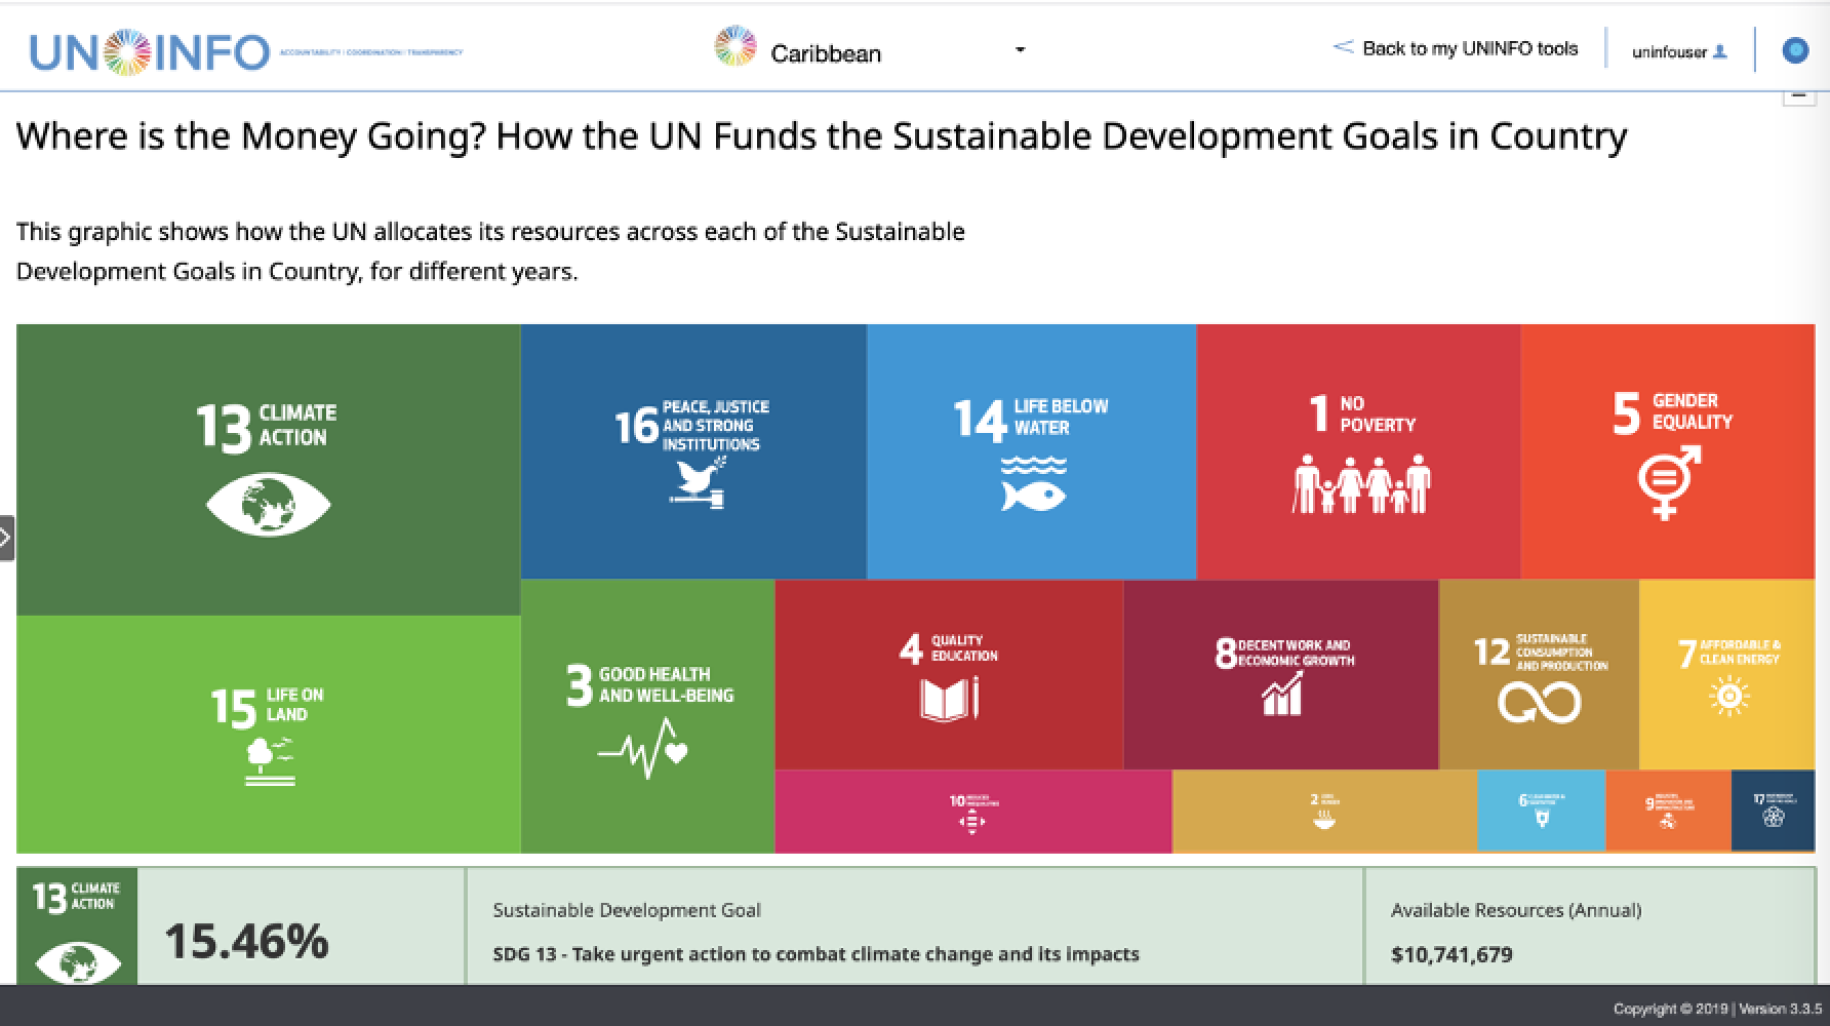 لقطة شاشة من UNINFO تظهر الاستثمارات في أهداف التنمية المستدامة لمنطقة البحر الكاريبي.